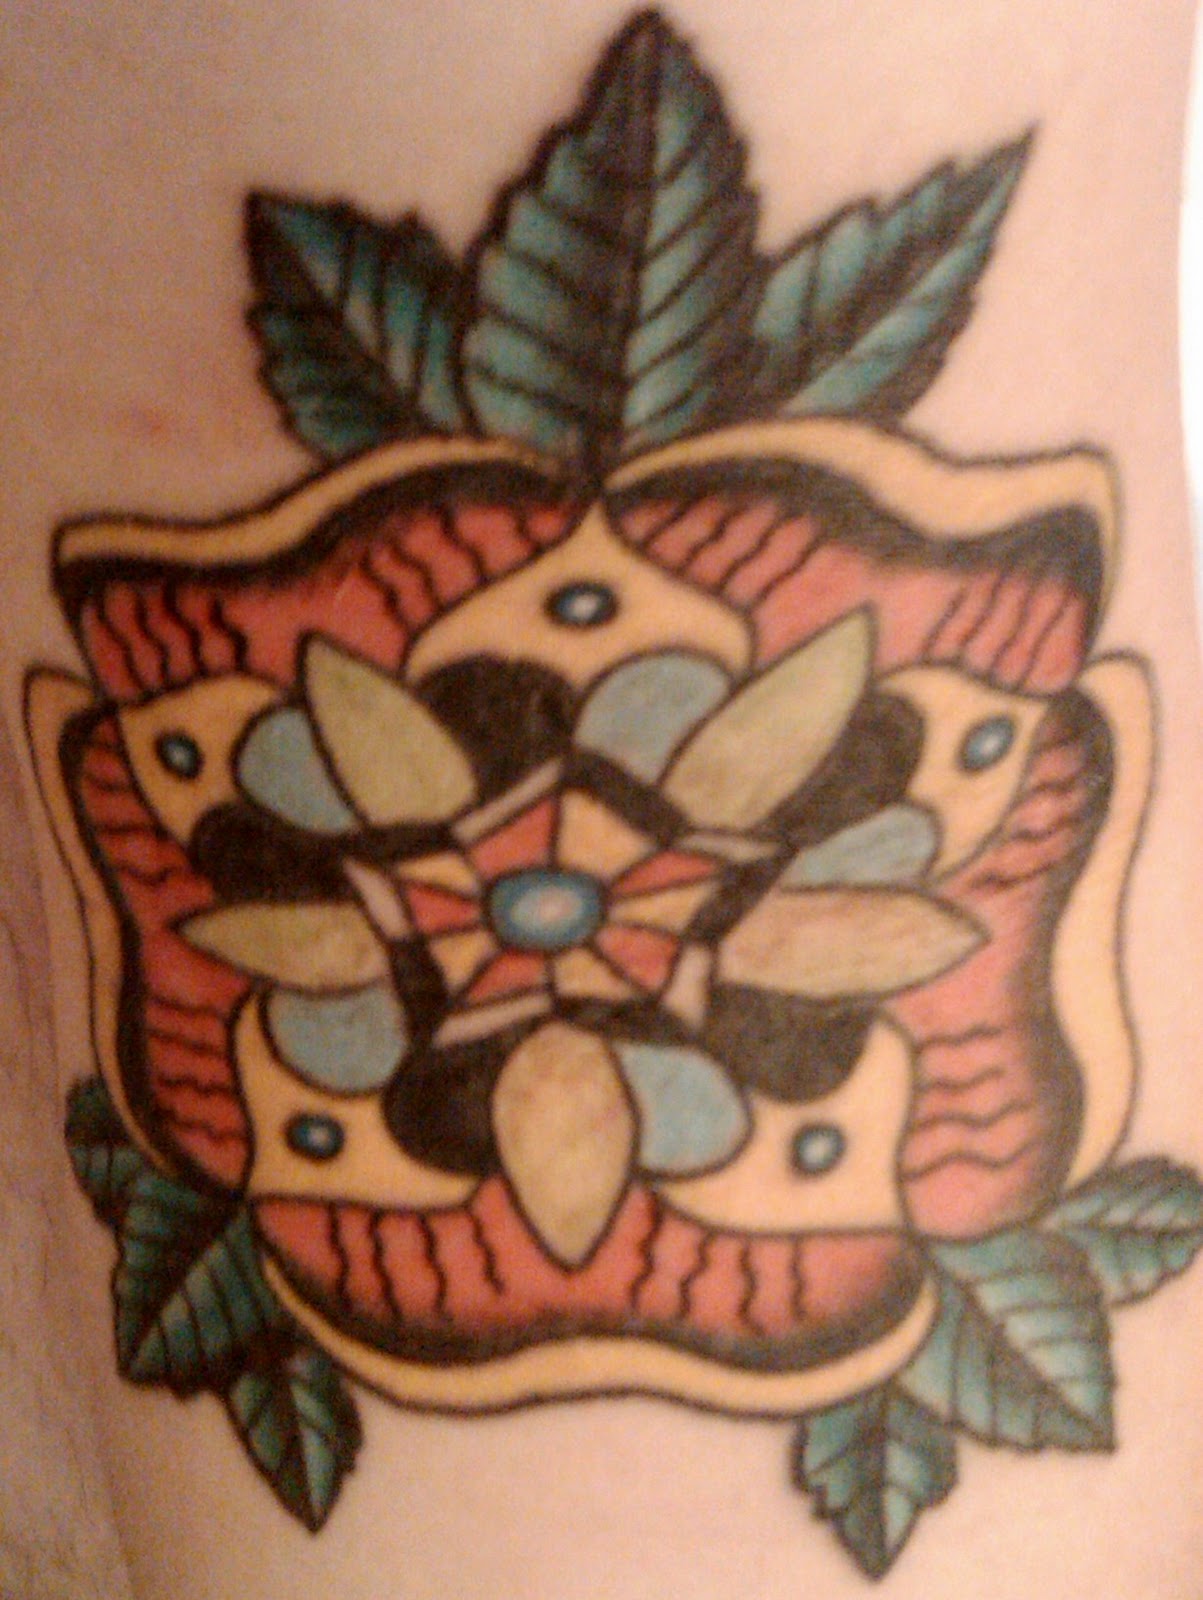 flower sleeve tattoos